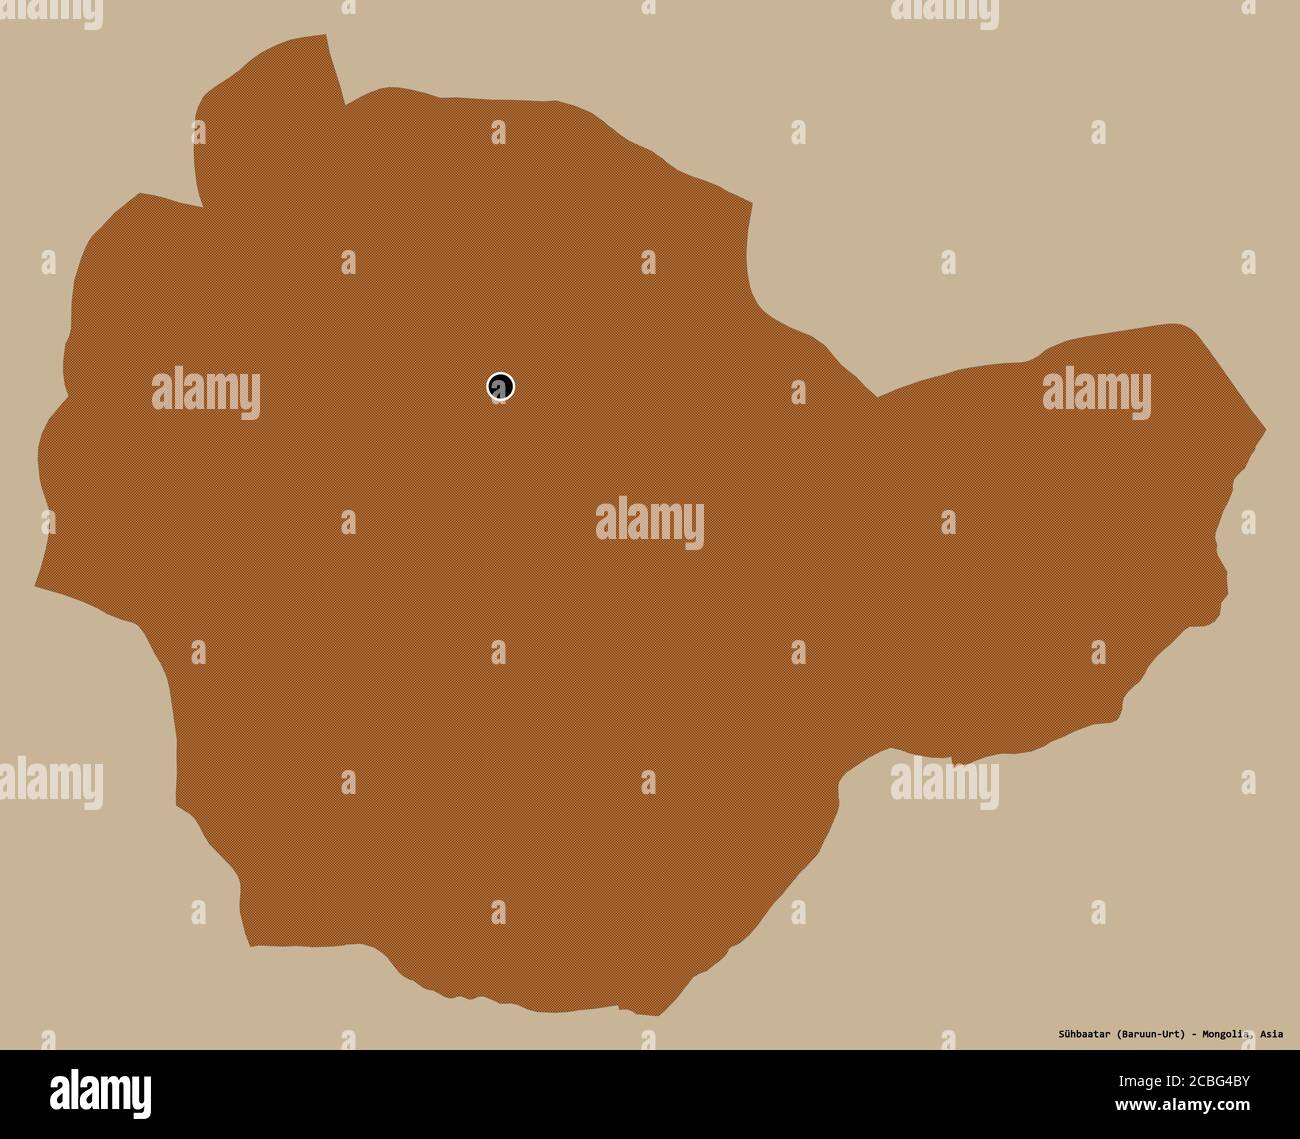 Forme de Sühbaatar, province de Mongolie, avec sa capitale isolée sur un fond de couleur unie. Composition des textures répétées. Rendu 3D Banque D'Images